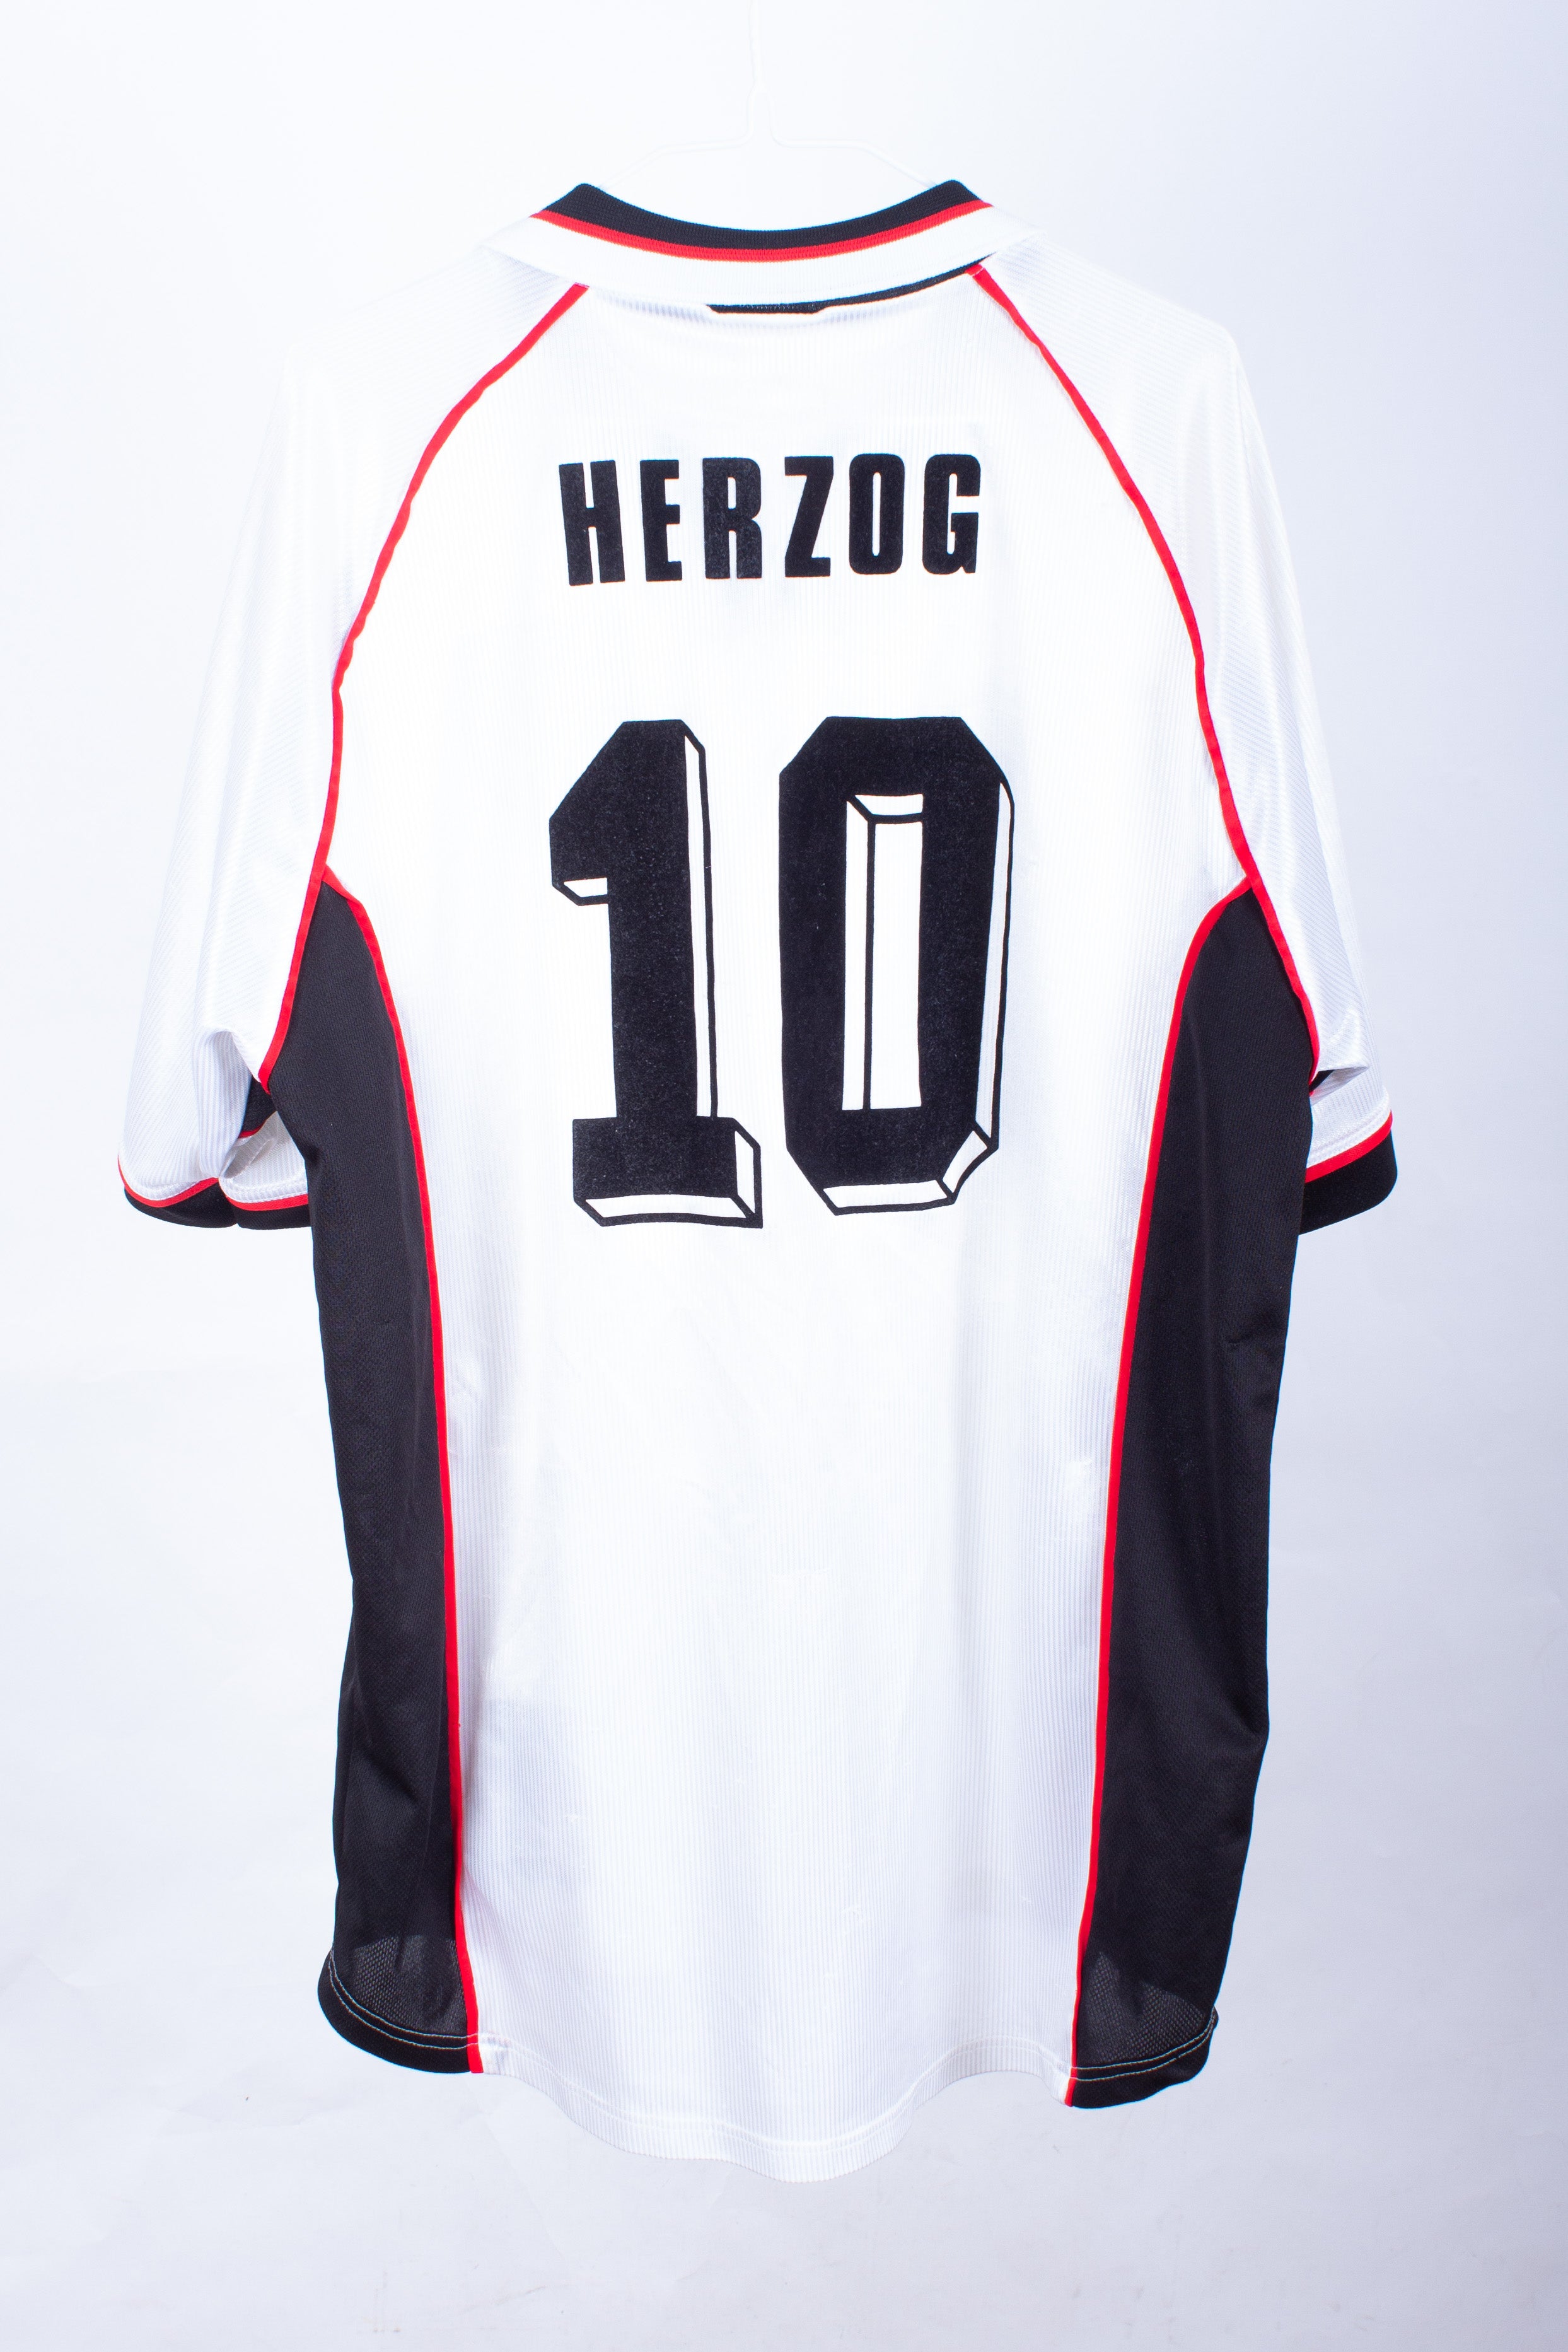 Austria 1998 Home Shirt (Herzog #10)